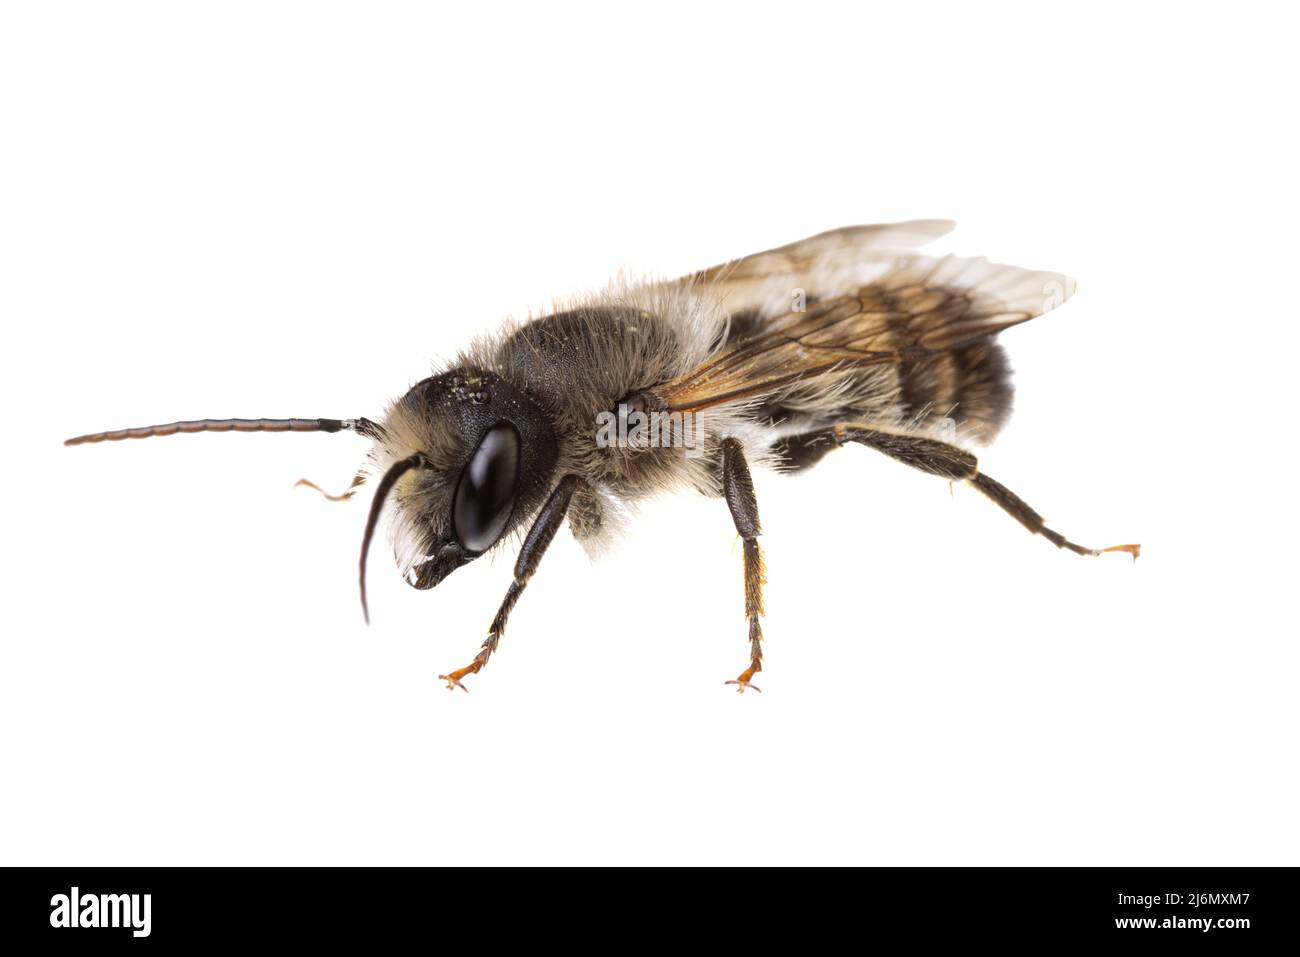 Insectes d'europe - abeilles: Vue de côté macro de l'abeille rouge masculine Osmia bicornis (rote Mauerbiene allemande) isolée sur fond blanc Banque D'Images